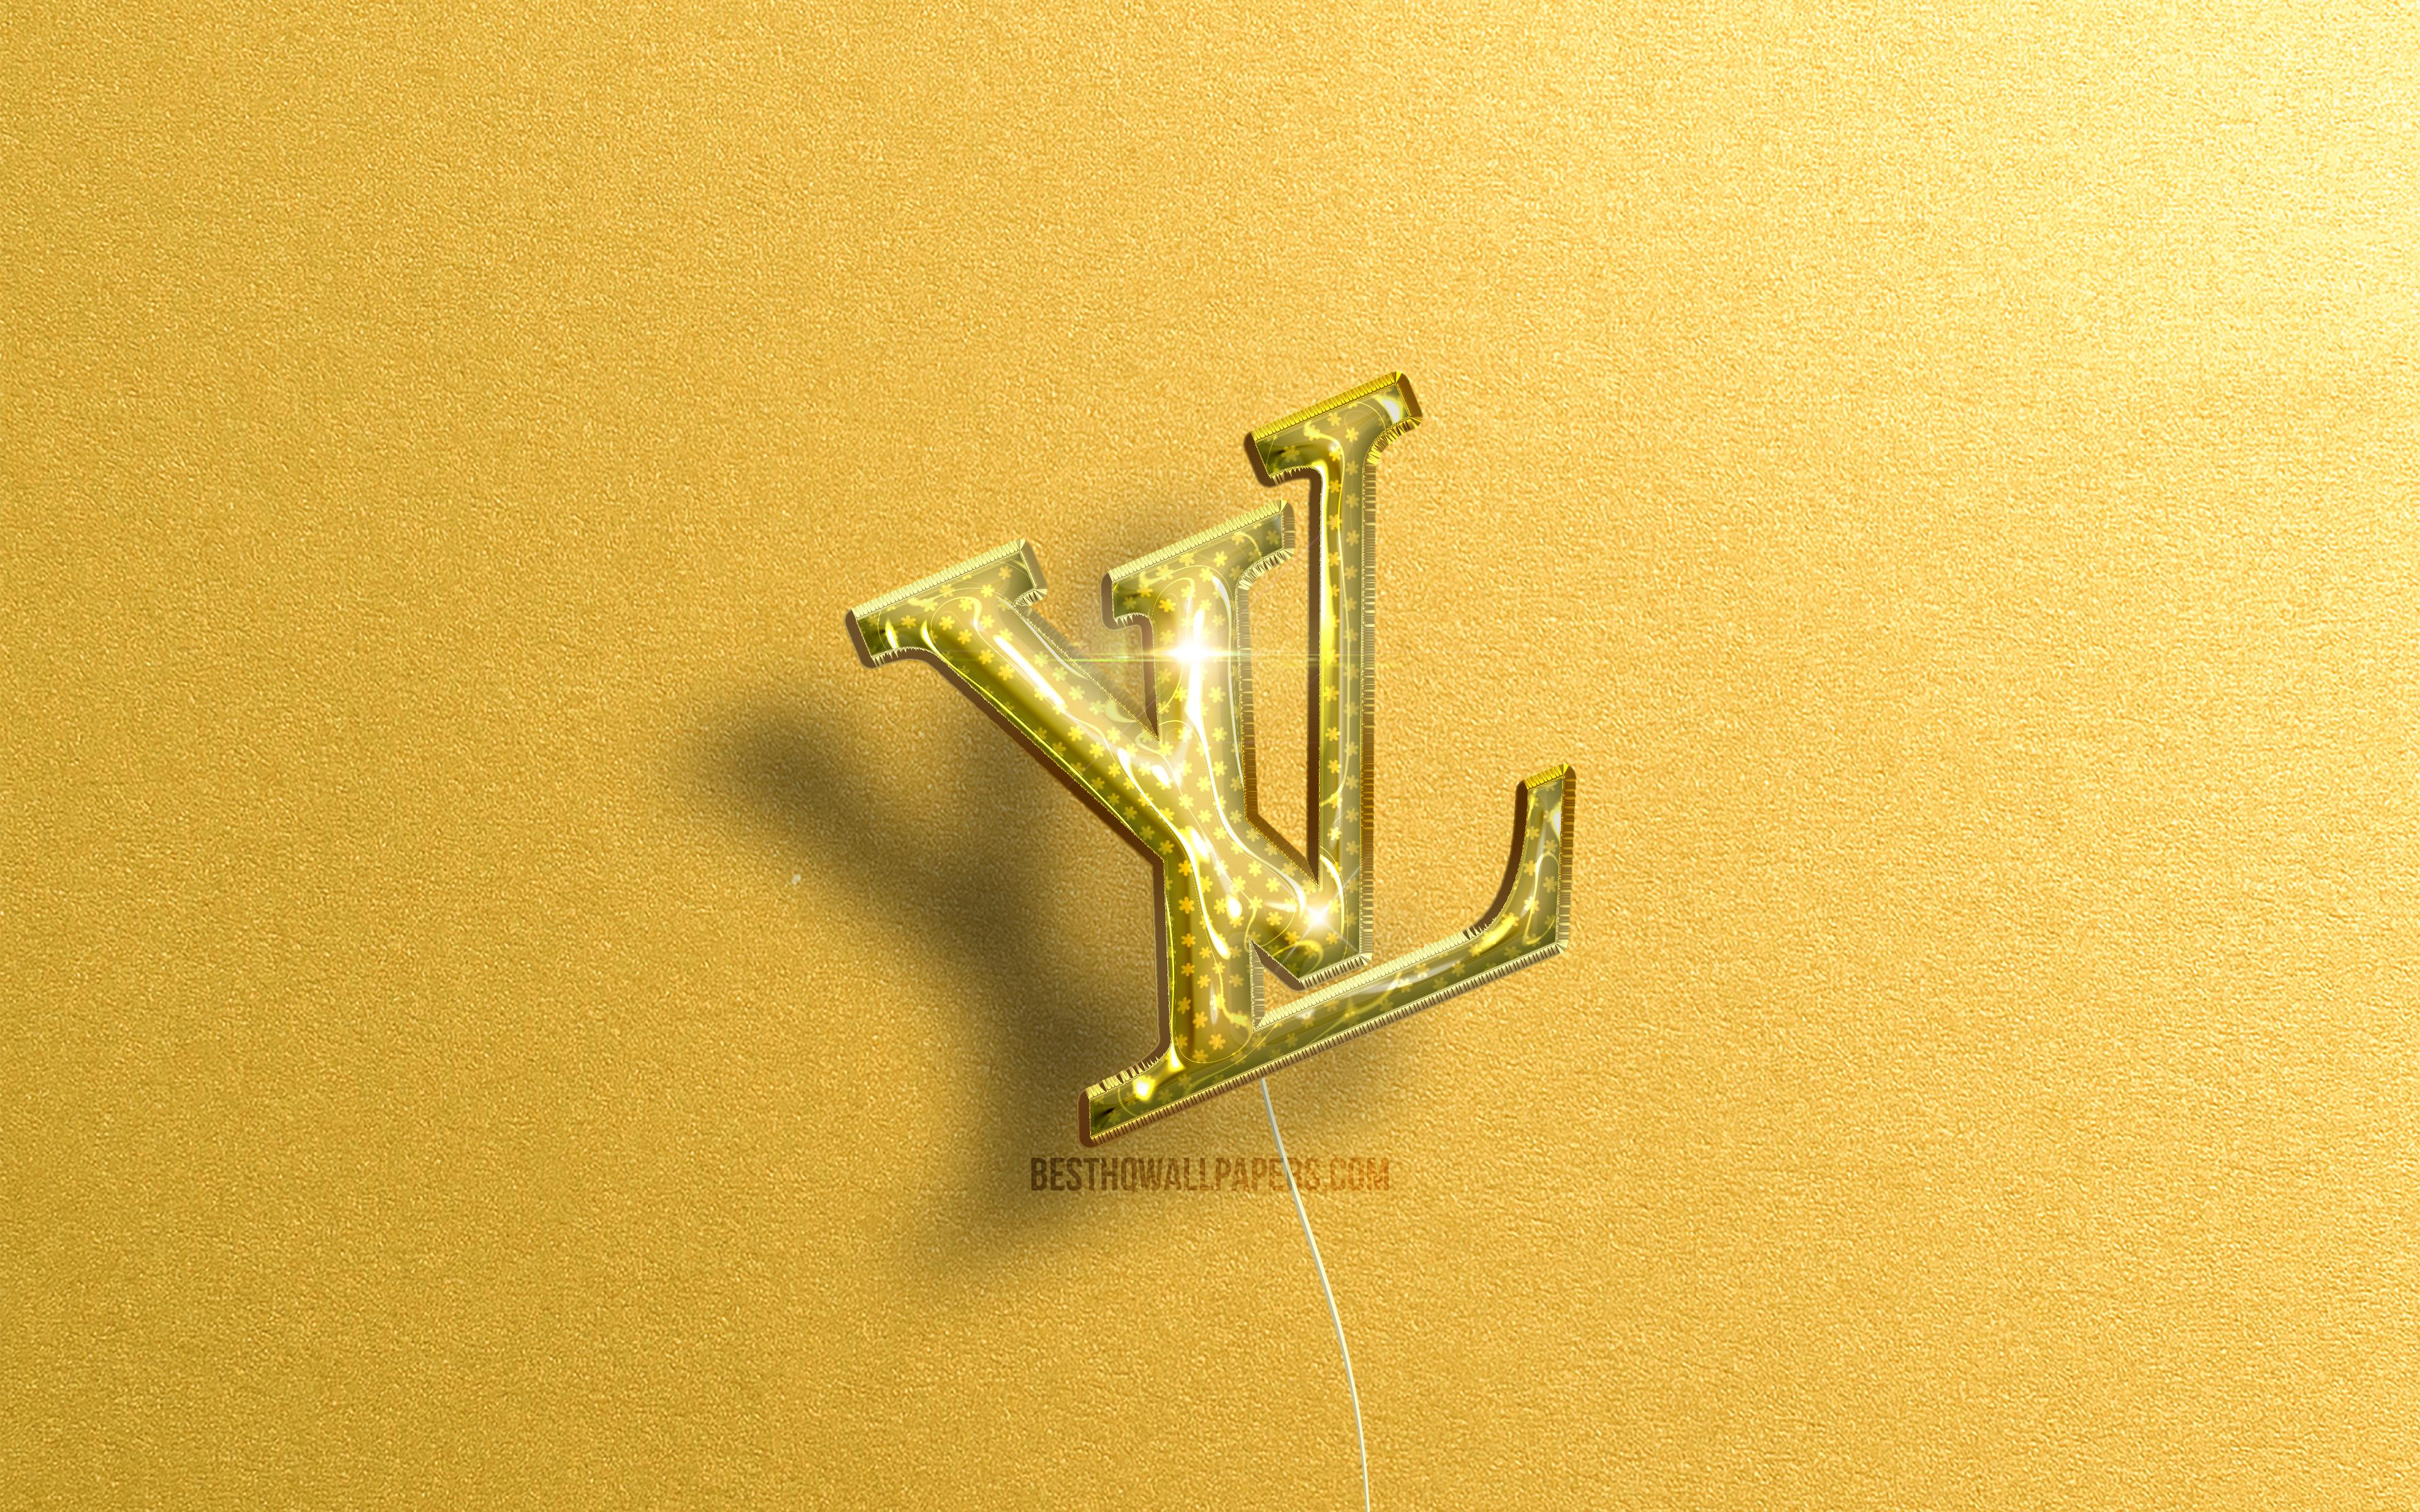 Louis Vuitton logo, violet realistic balloons, Louis Vuitton 3D